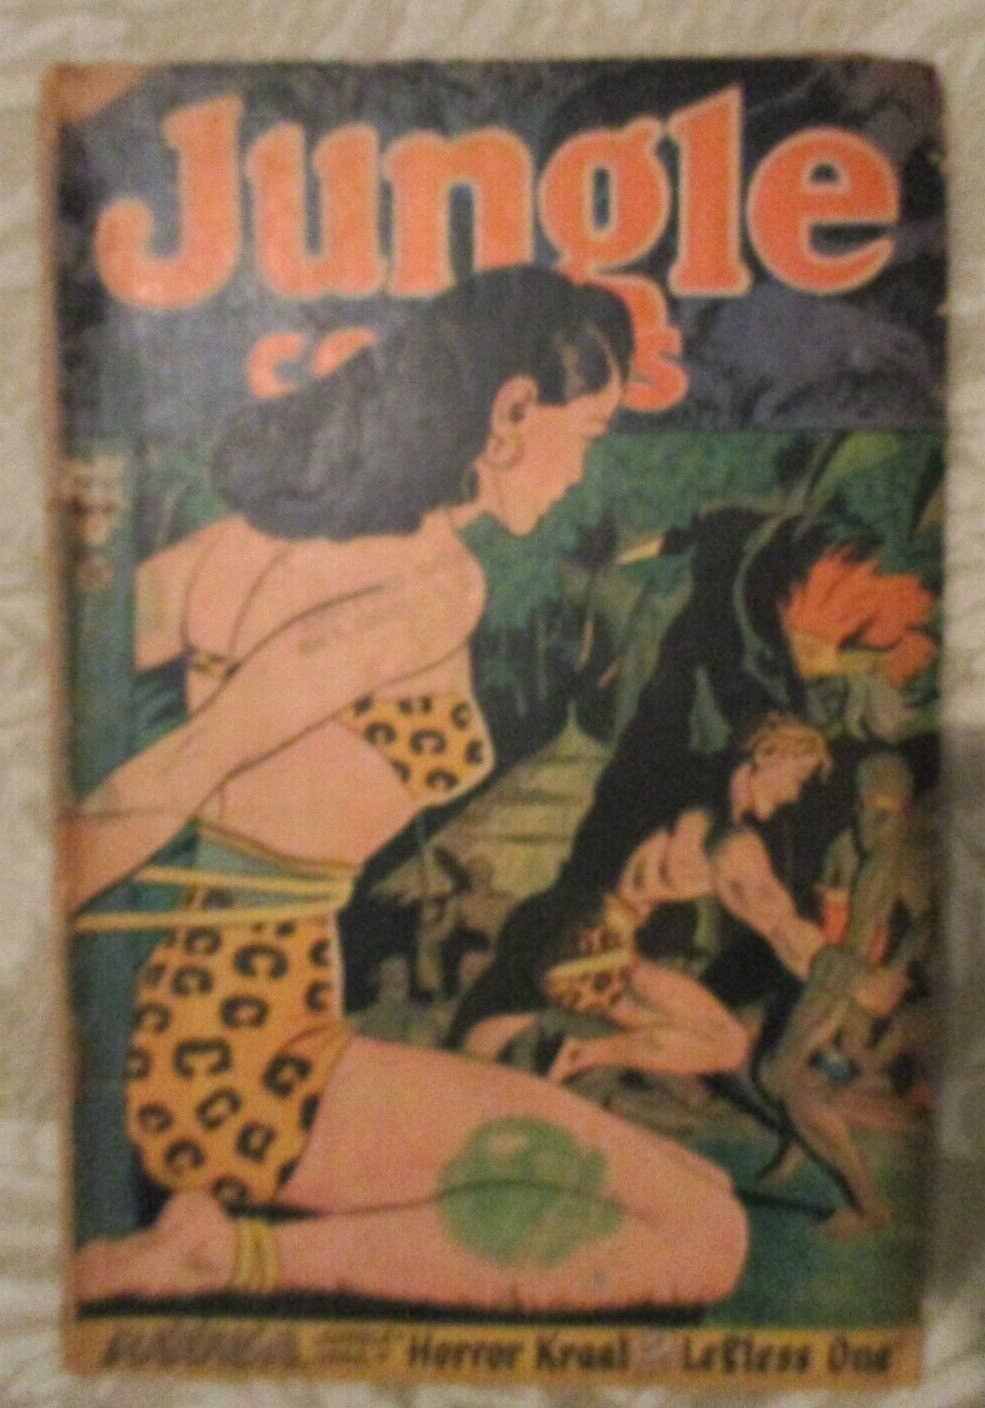 JUNGLE COMICS #87 - 1947 FICTION HOUSE - BONDAGE COVER, G, KAANGA, JOHN CELARDO